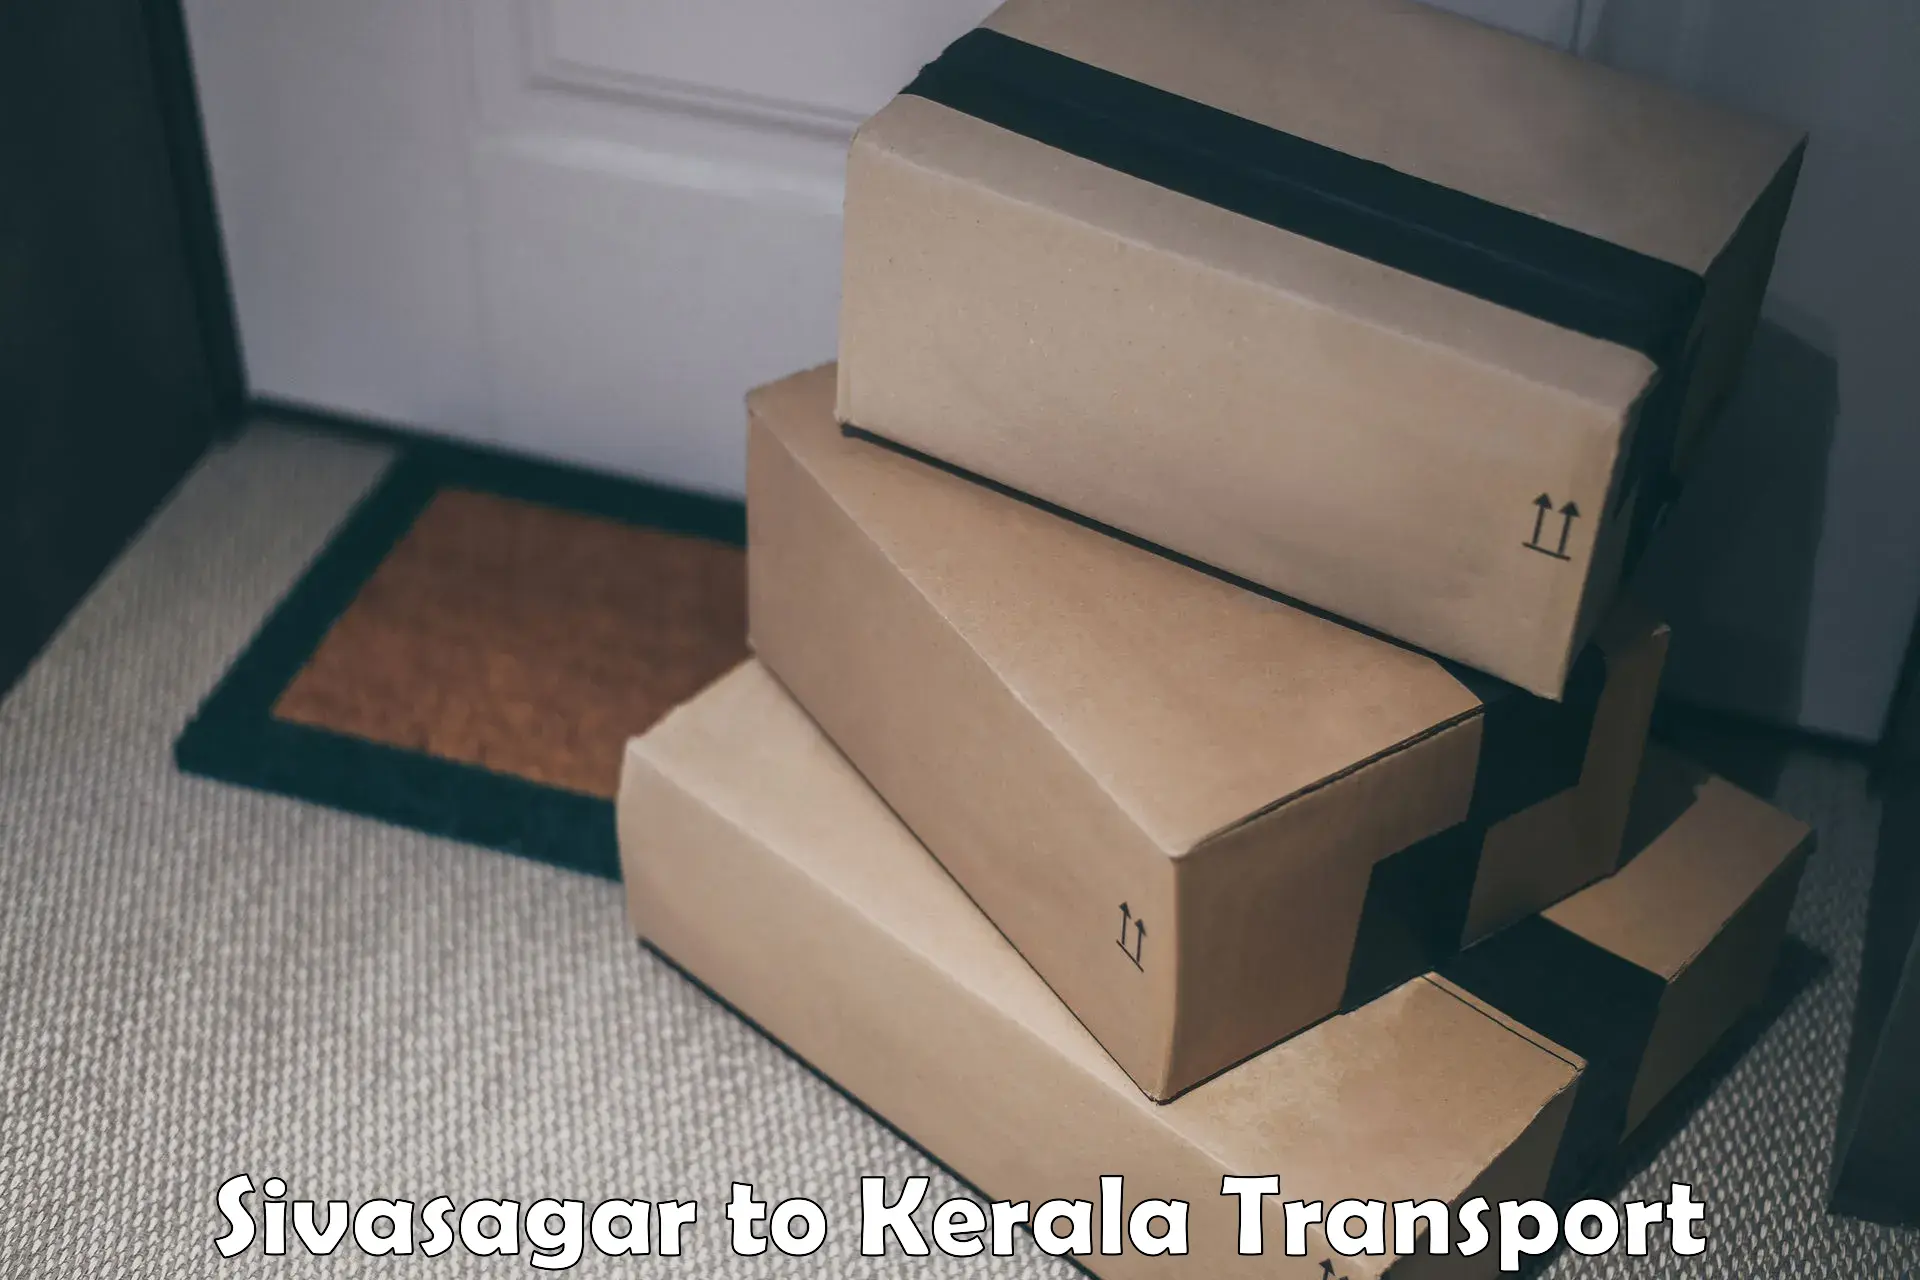 Shipping services Sivasagar to Chiramanangad